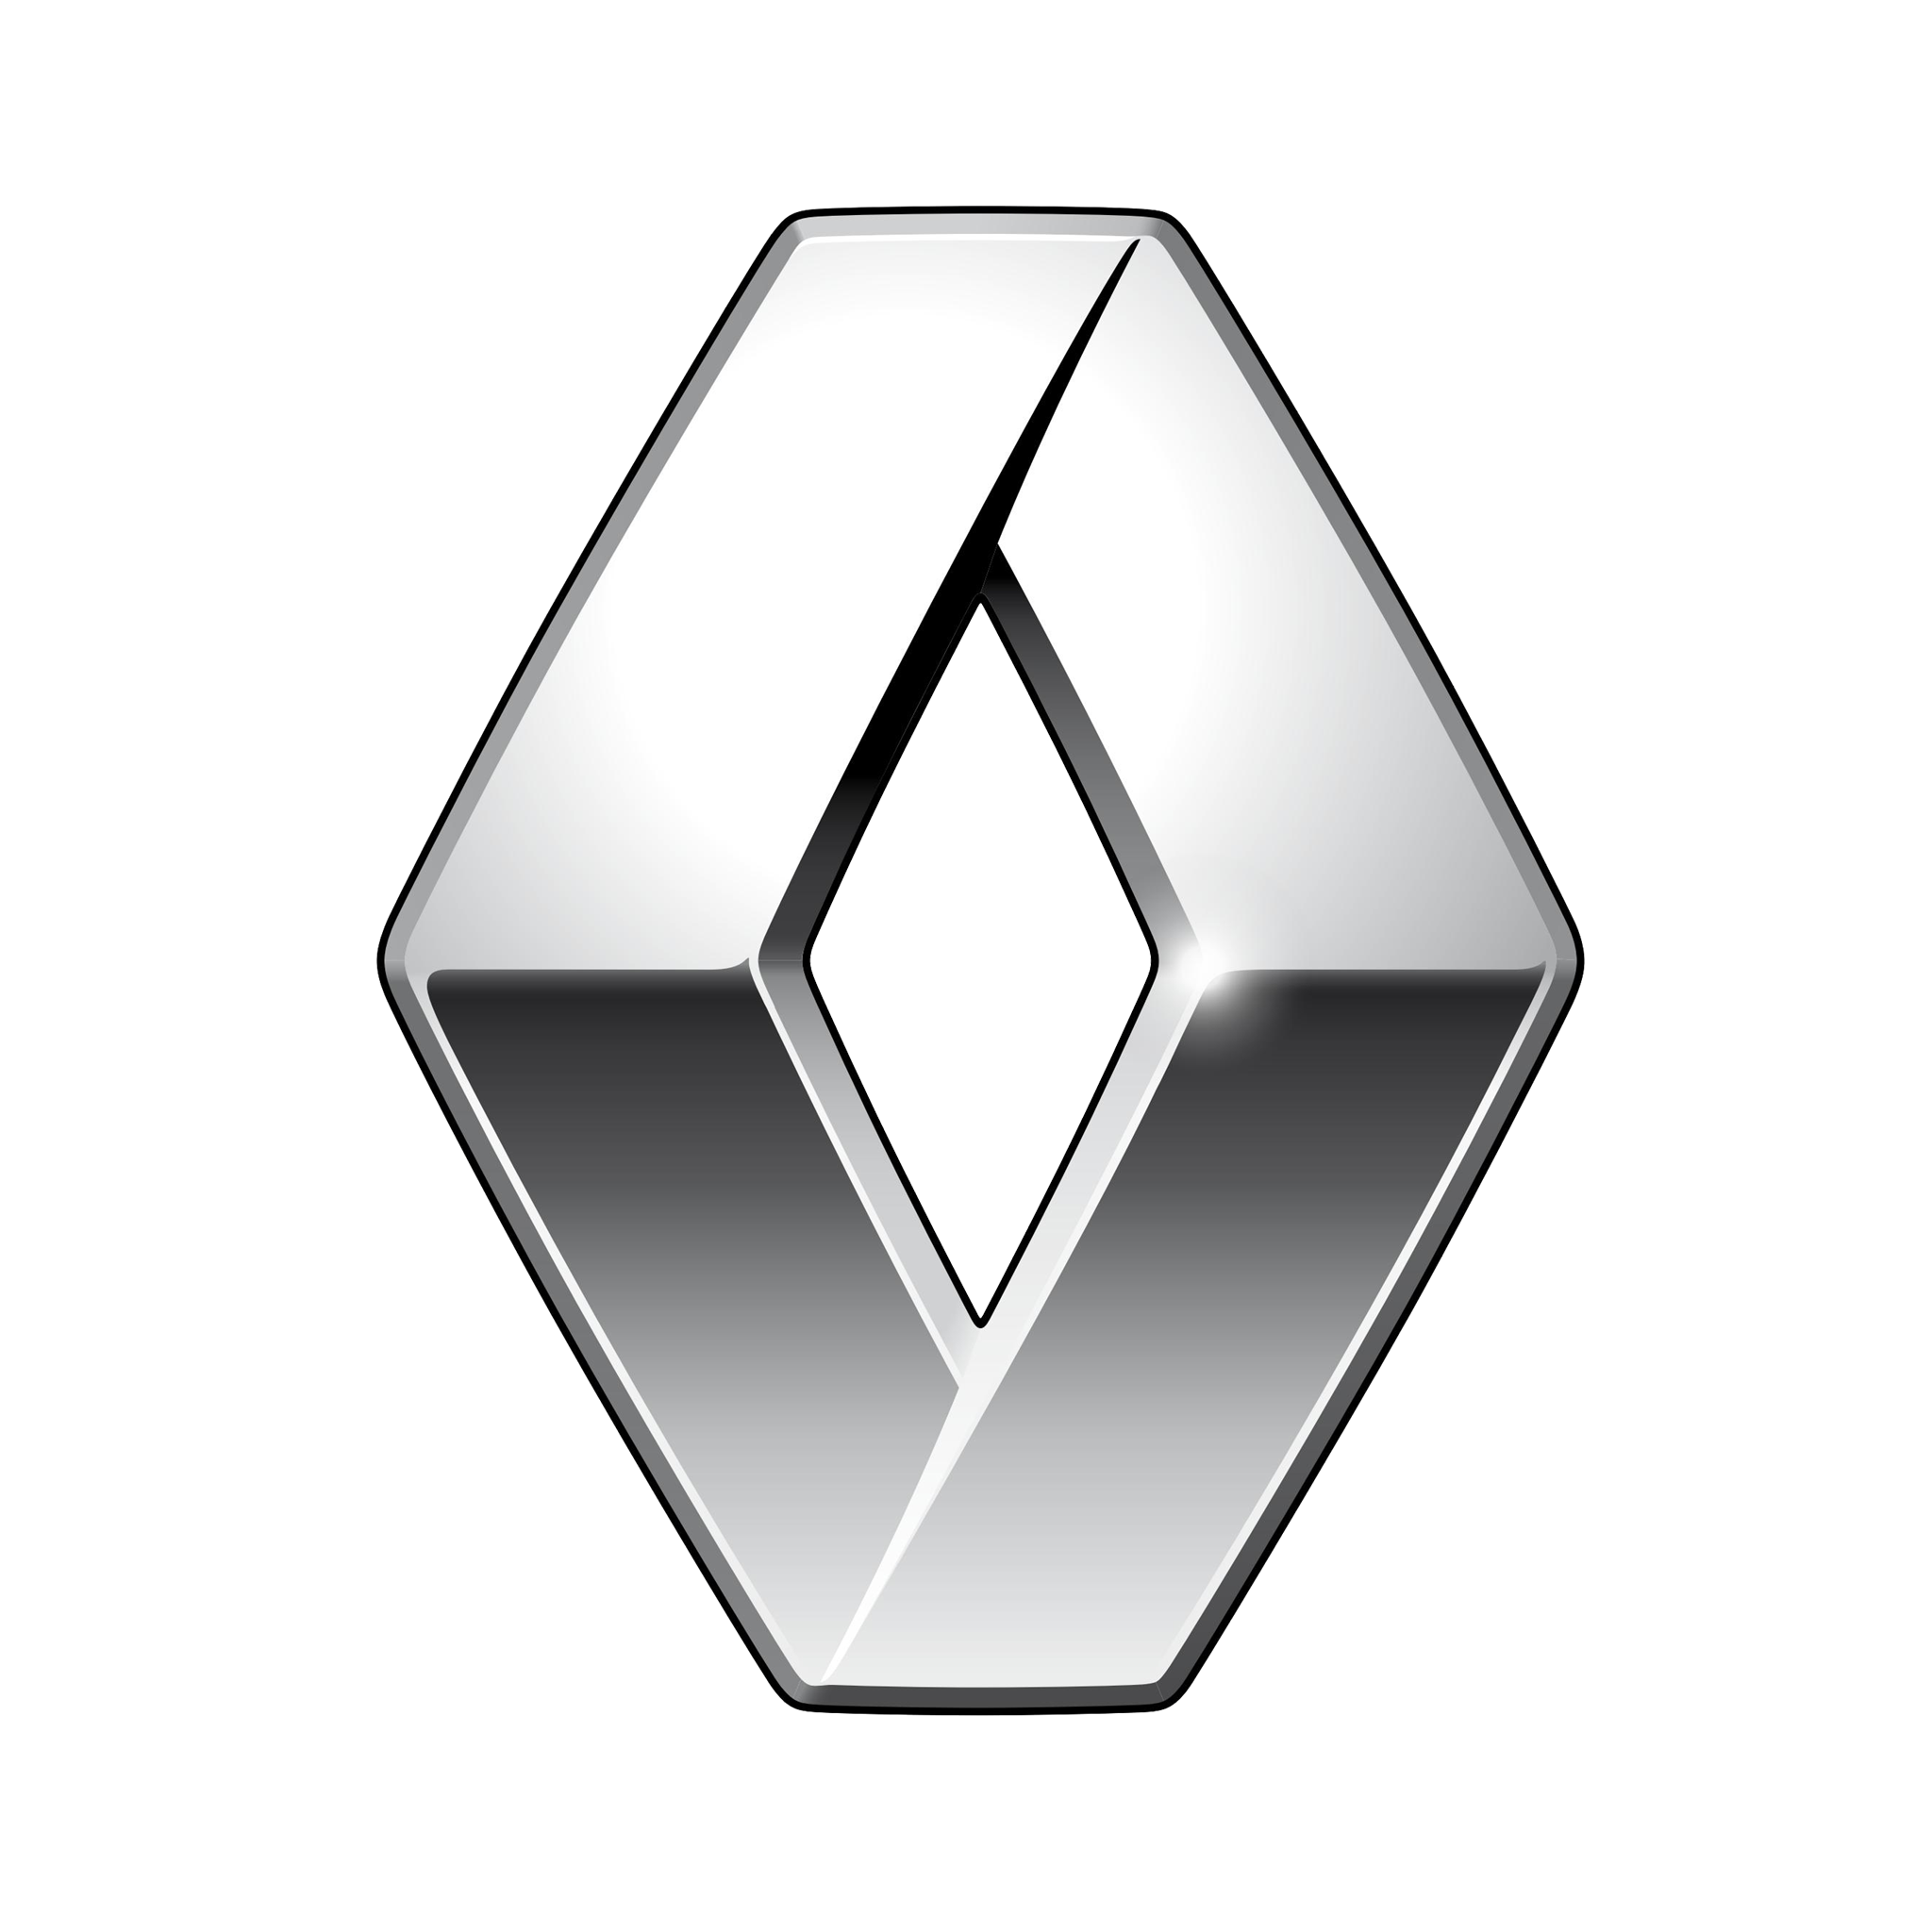 Renault-logo-2015-2048x2048.png